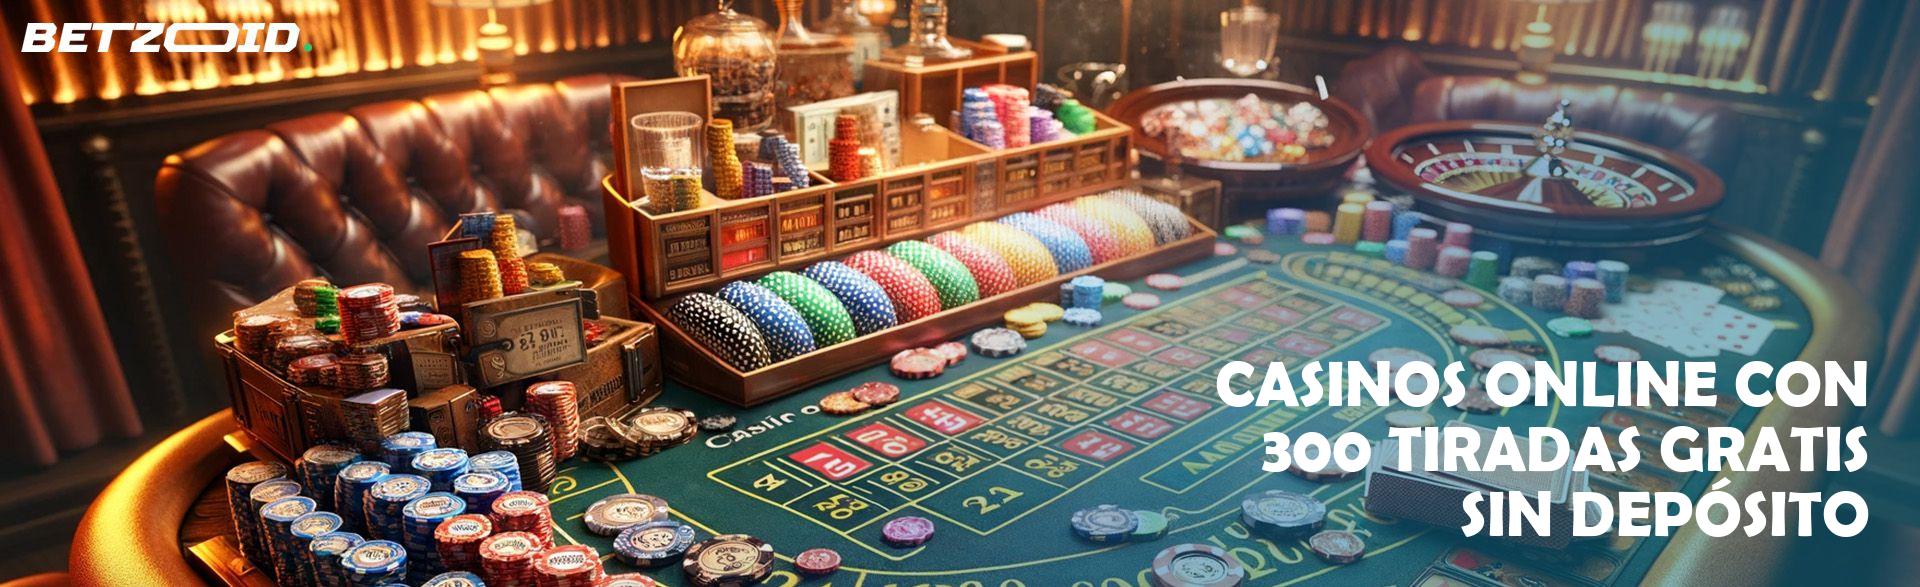 Casinos tiradas gratis sin deposito